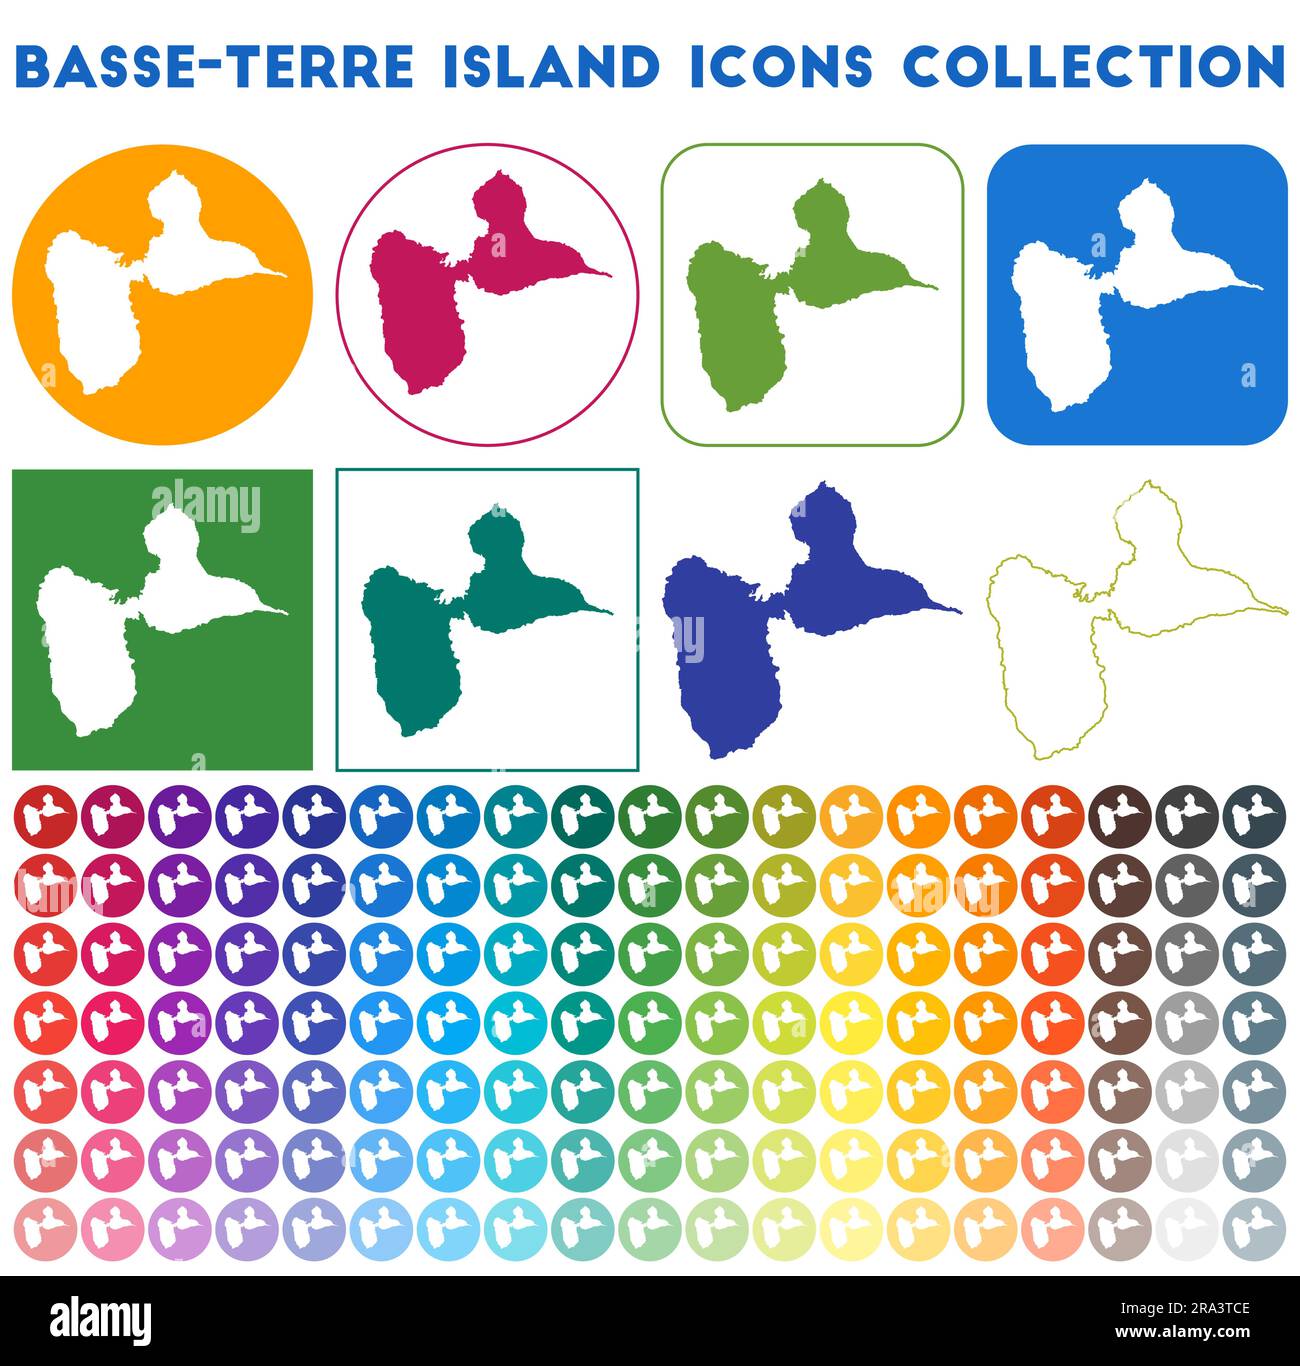 Collection d'icônes de Basse-Terre Island. Icônes de carte tendance colorées et lumineuses. Badge moderne de l'île de Basse-Terre. Illustration vectorielle. Illustration de Vecteur